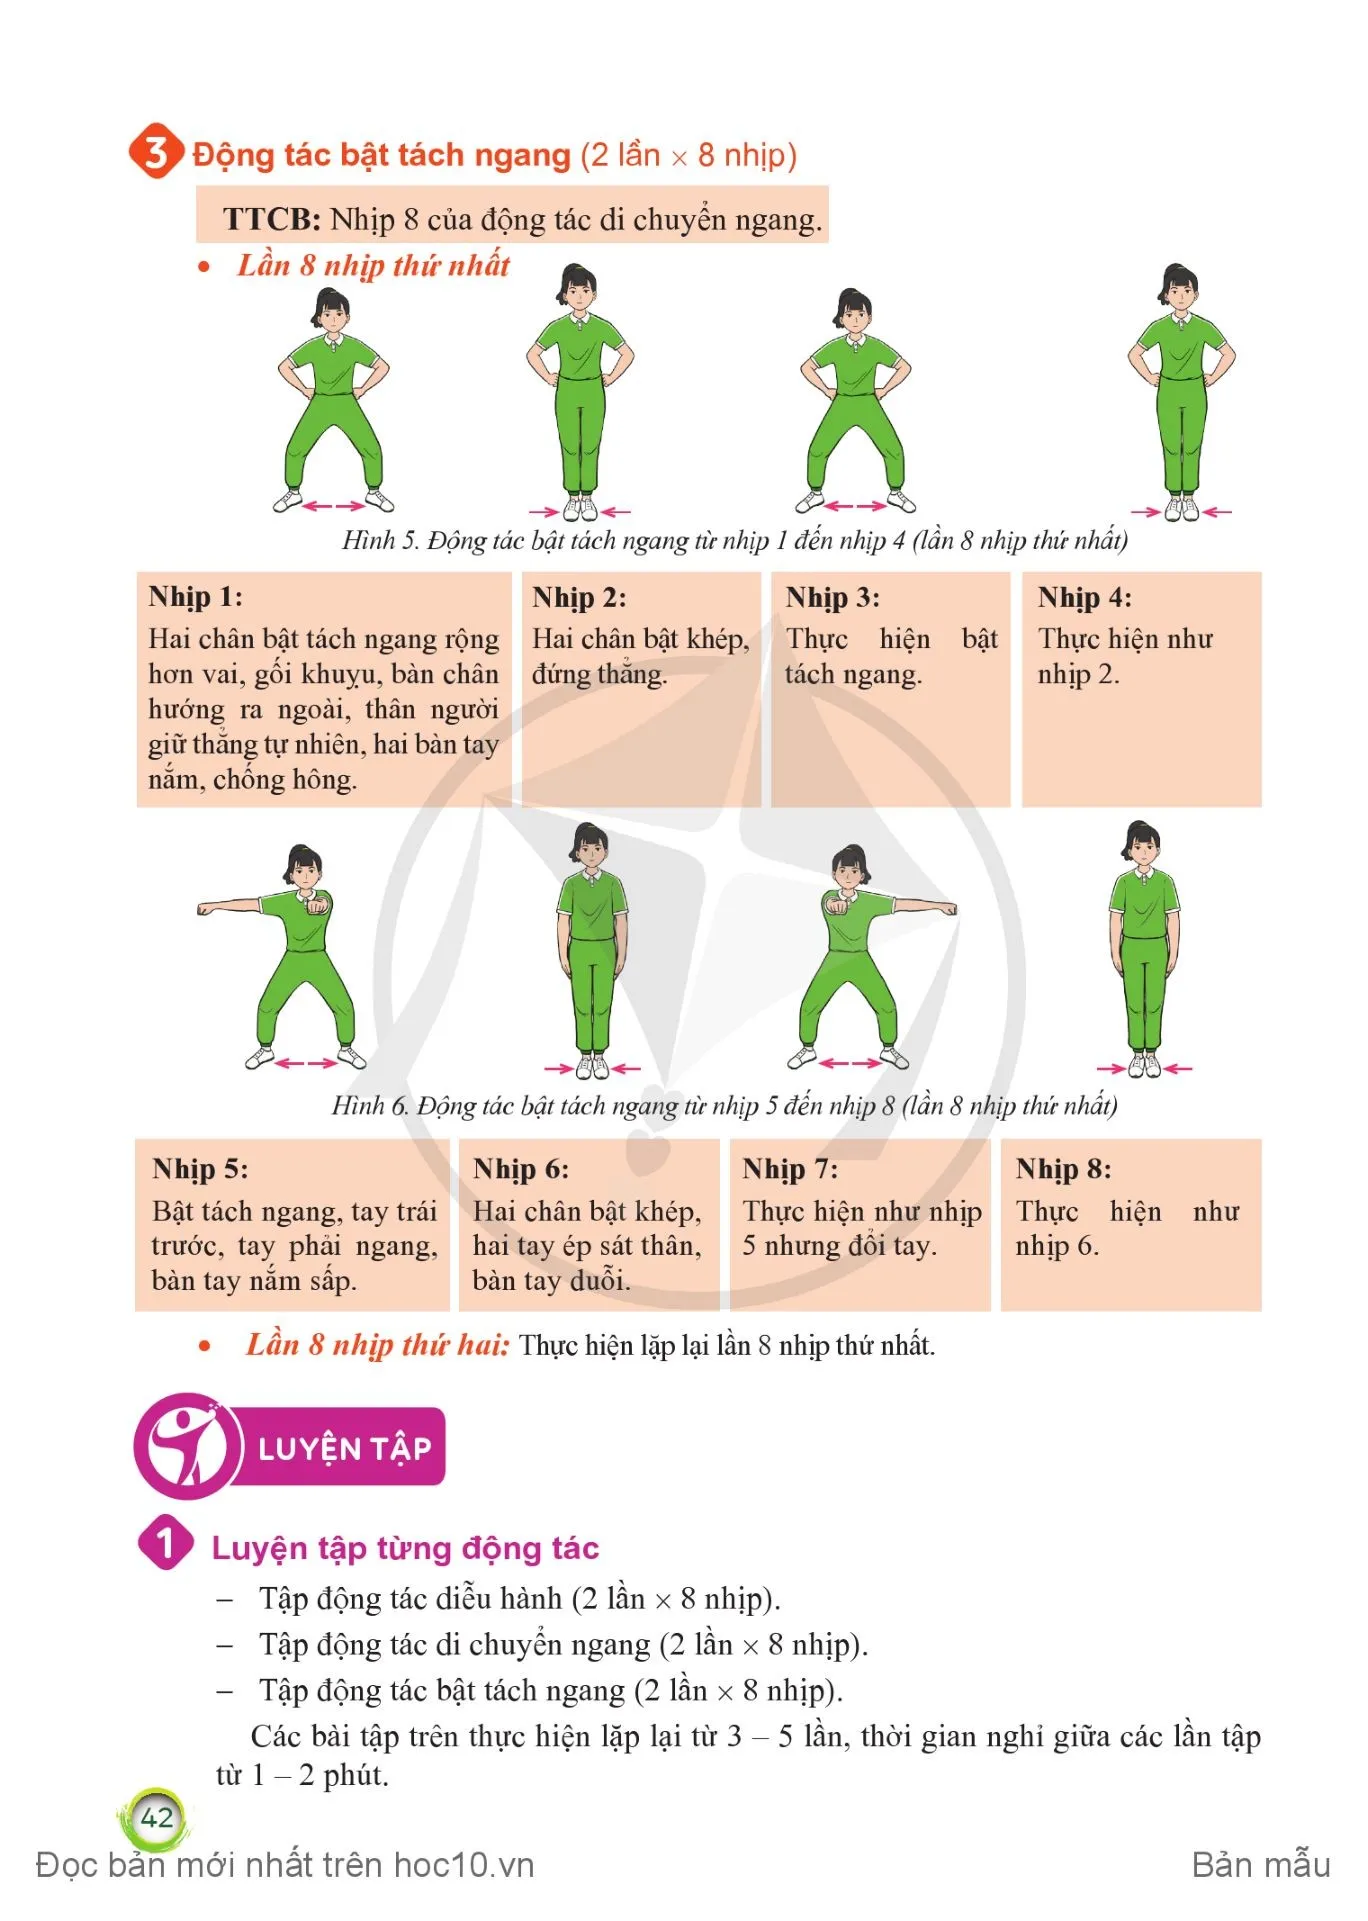 Bài 1. Bài thể dục nhịp điệu (Động tác diễu hành, động tác di chuyển ngang và động tác bật tách ngang)